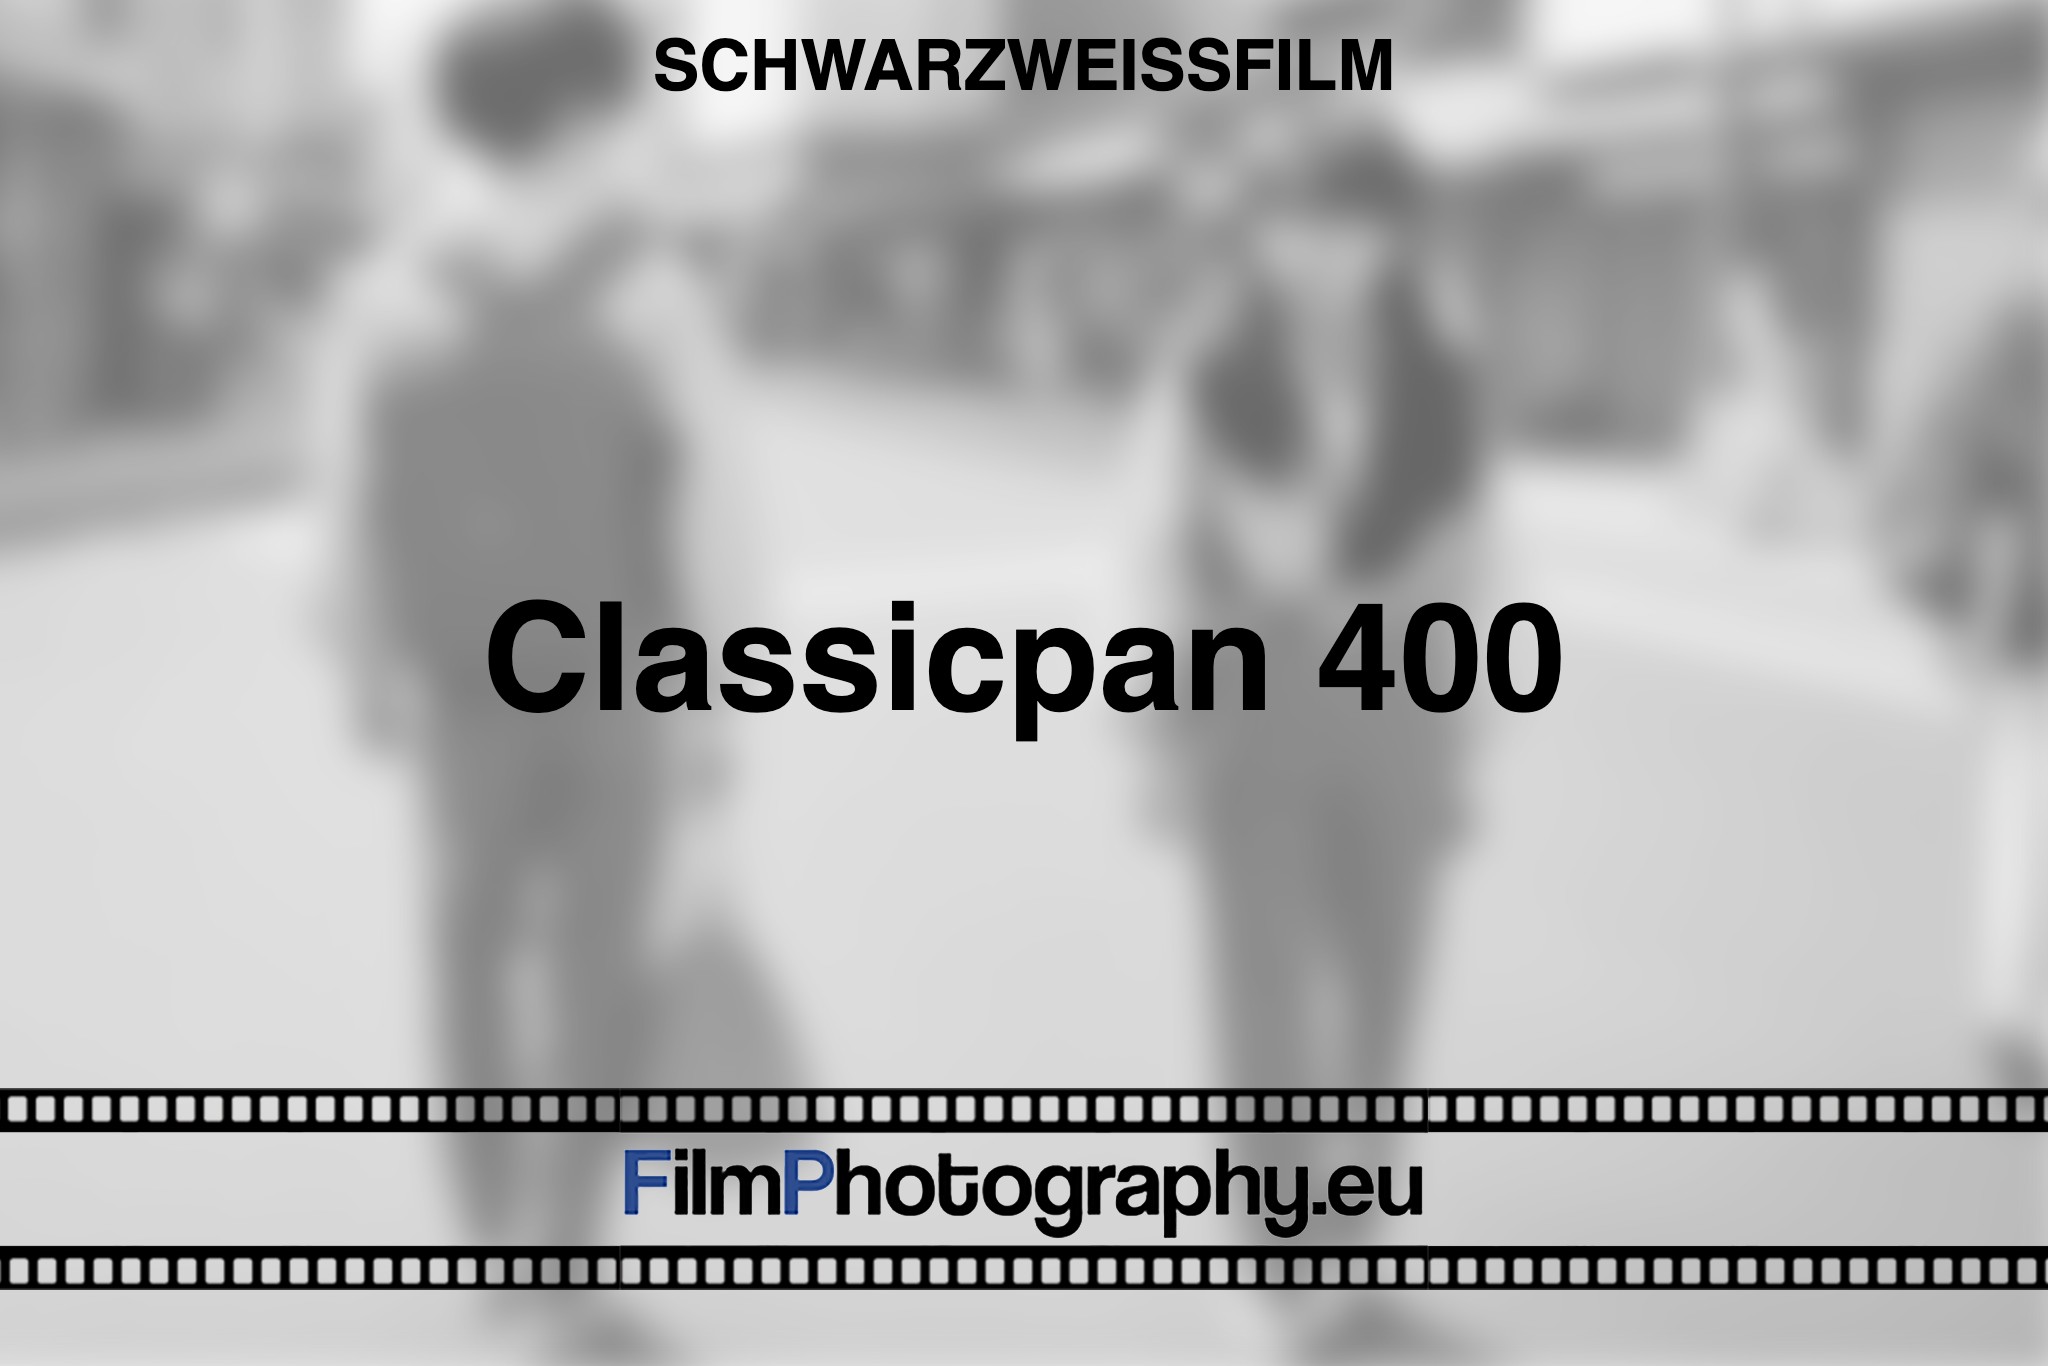 classicpan-400-schwarzweißfilm-bnv